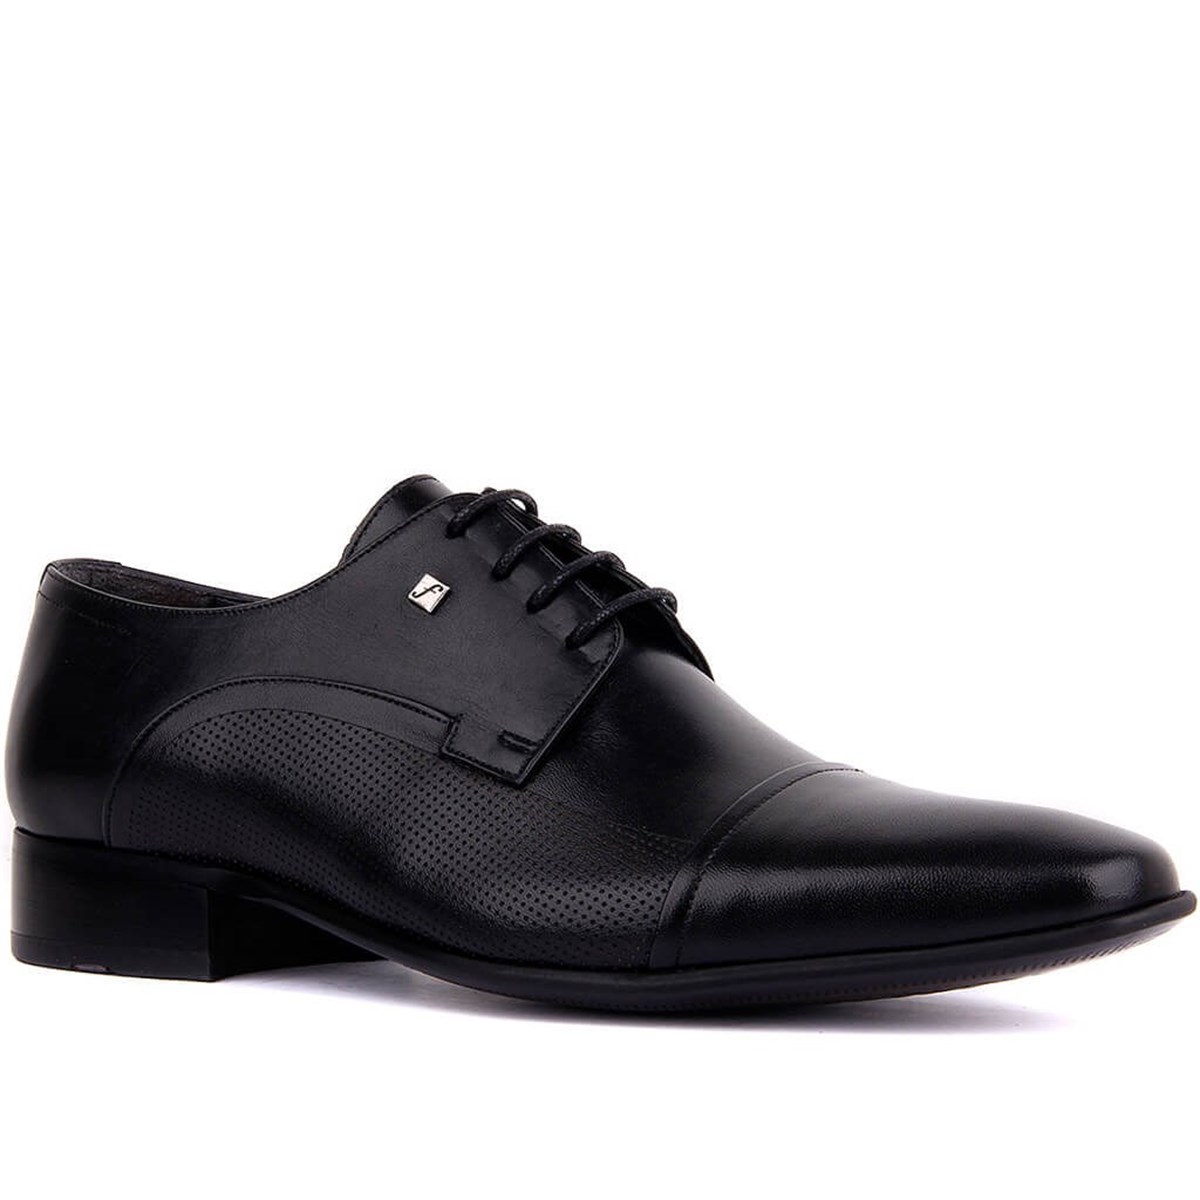 Erkek Hakiki Deri Klasik Ayakkabı, Renk: Siyah, Beden: 37